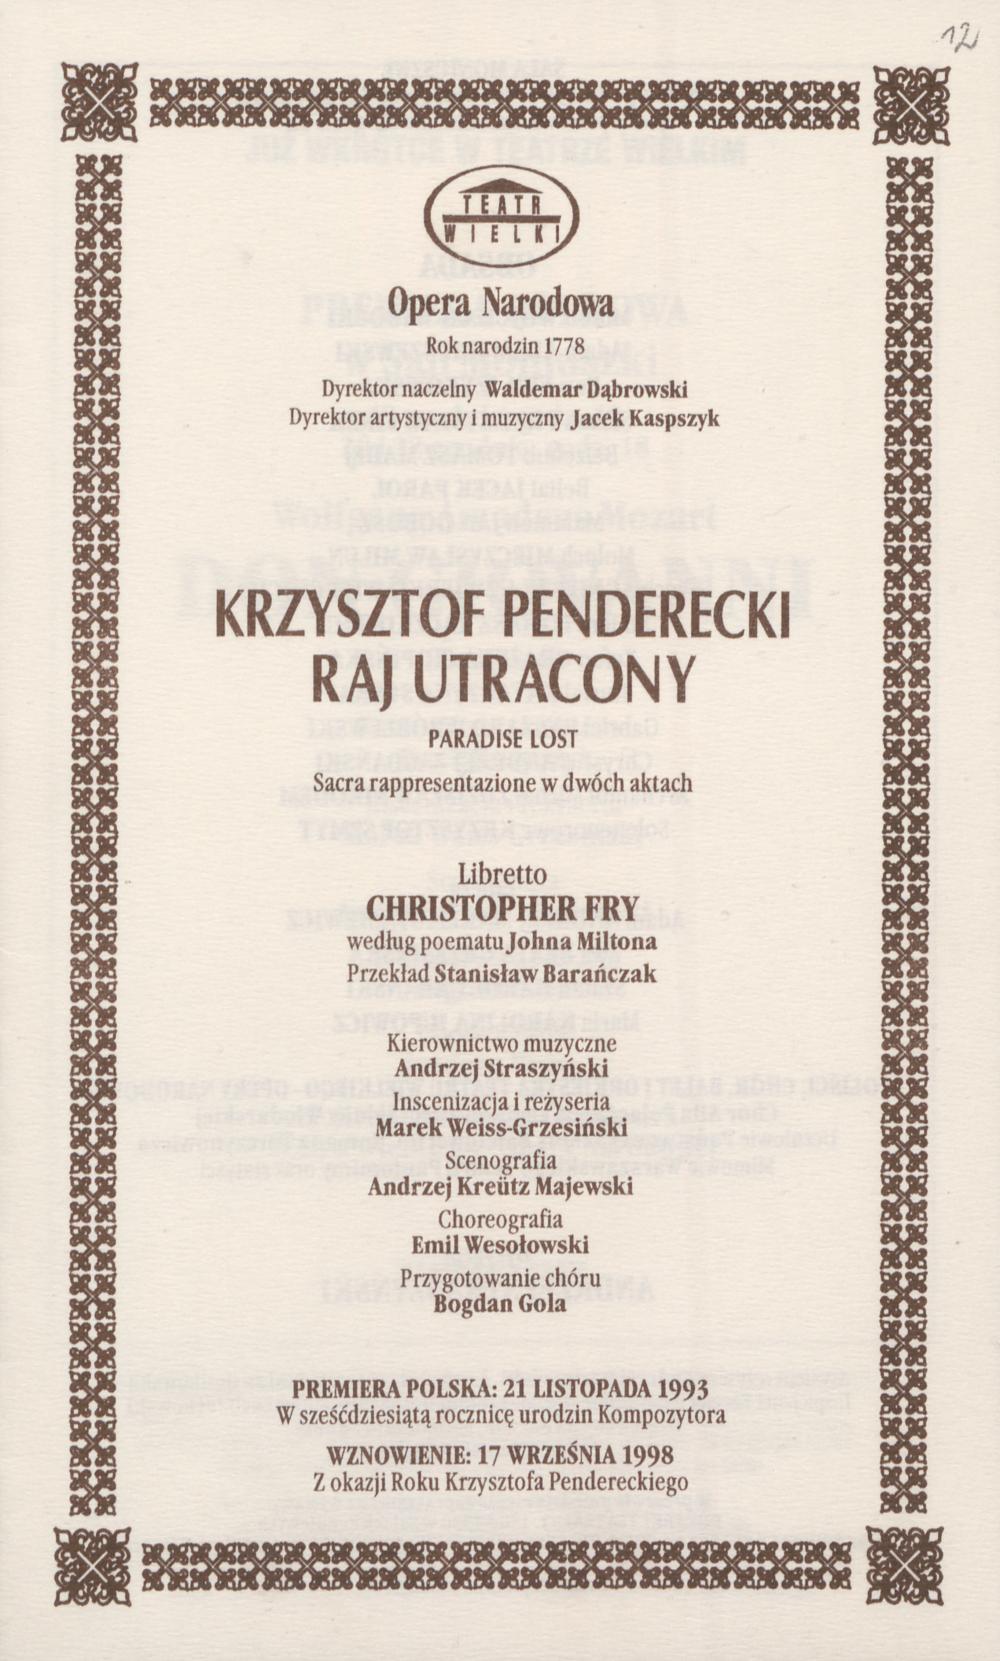 Wkładka obsadowa „Raj Utracony” Krzysztof Penderecki 28-11-1998